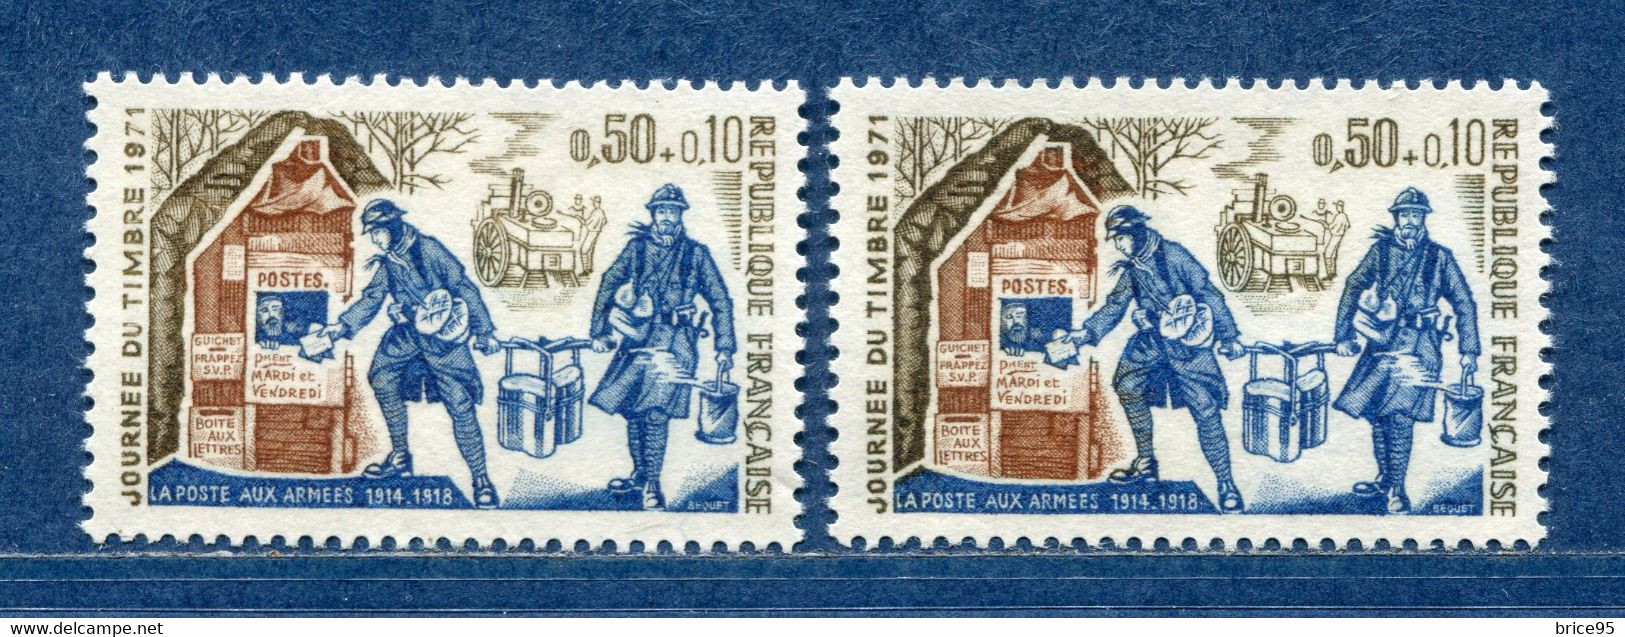 ⭐ France - Variété - YT N° 1671 - Couleurs - Pétouilles - Neuf Sans Charnière - 1971 ⭐ - Unused Stamps